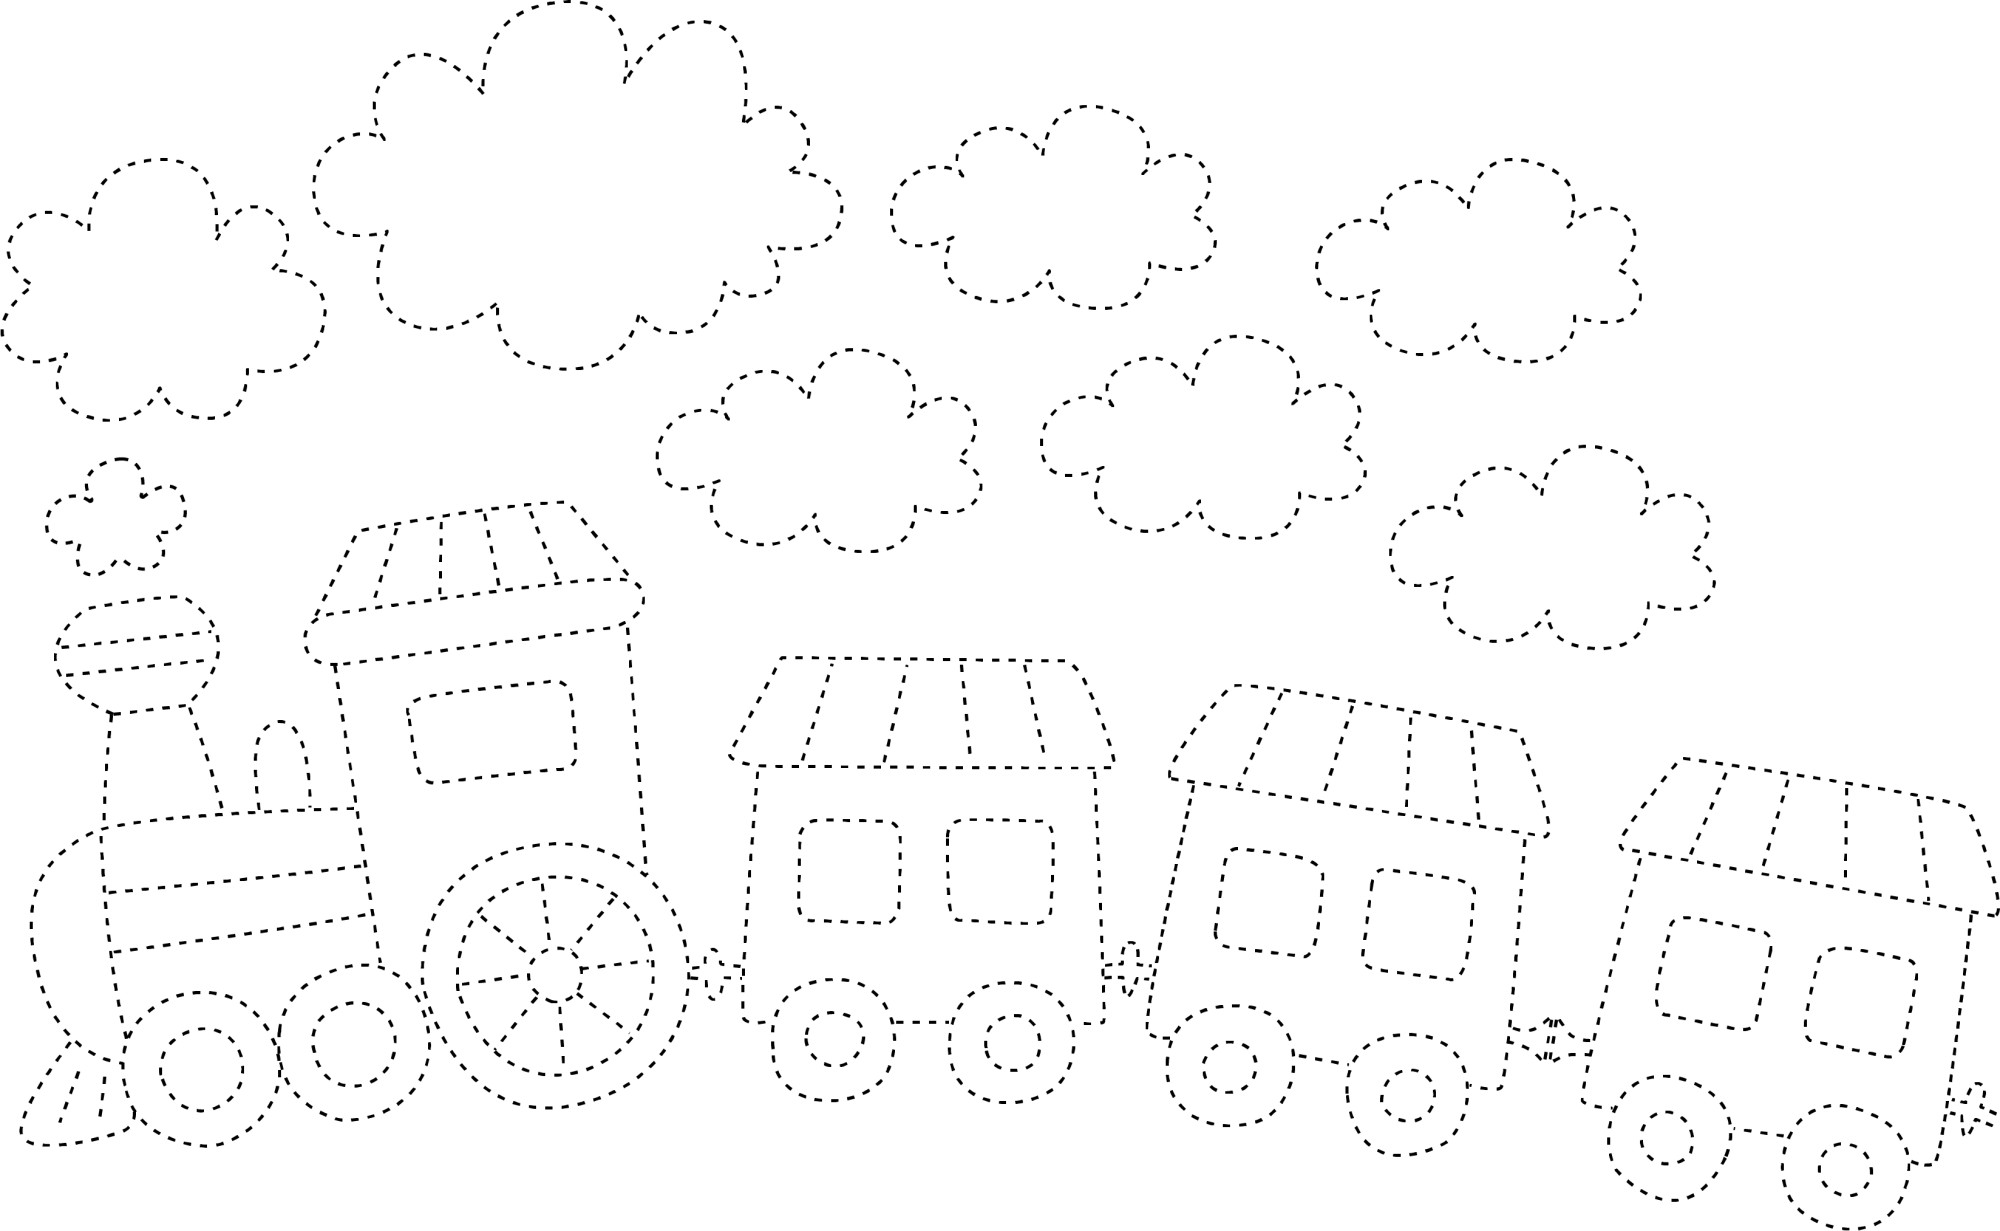 Раскраска для детей: поезд с тремя вагонами по точкам